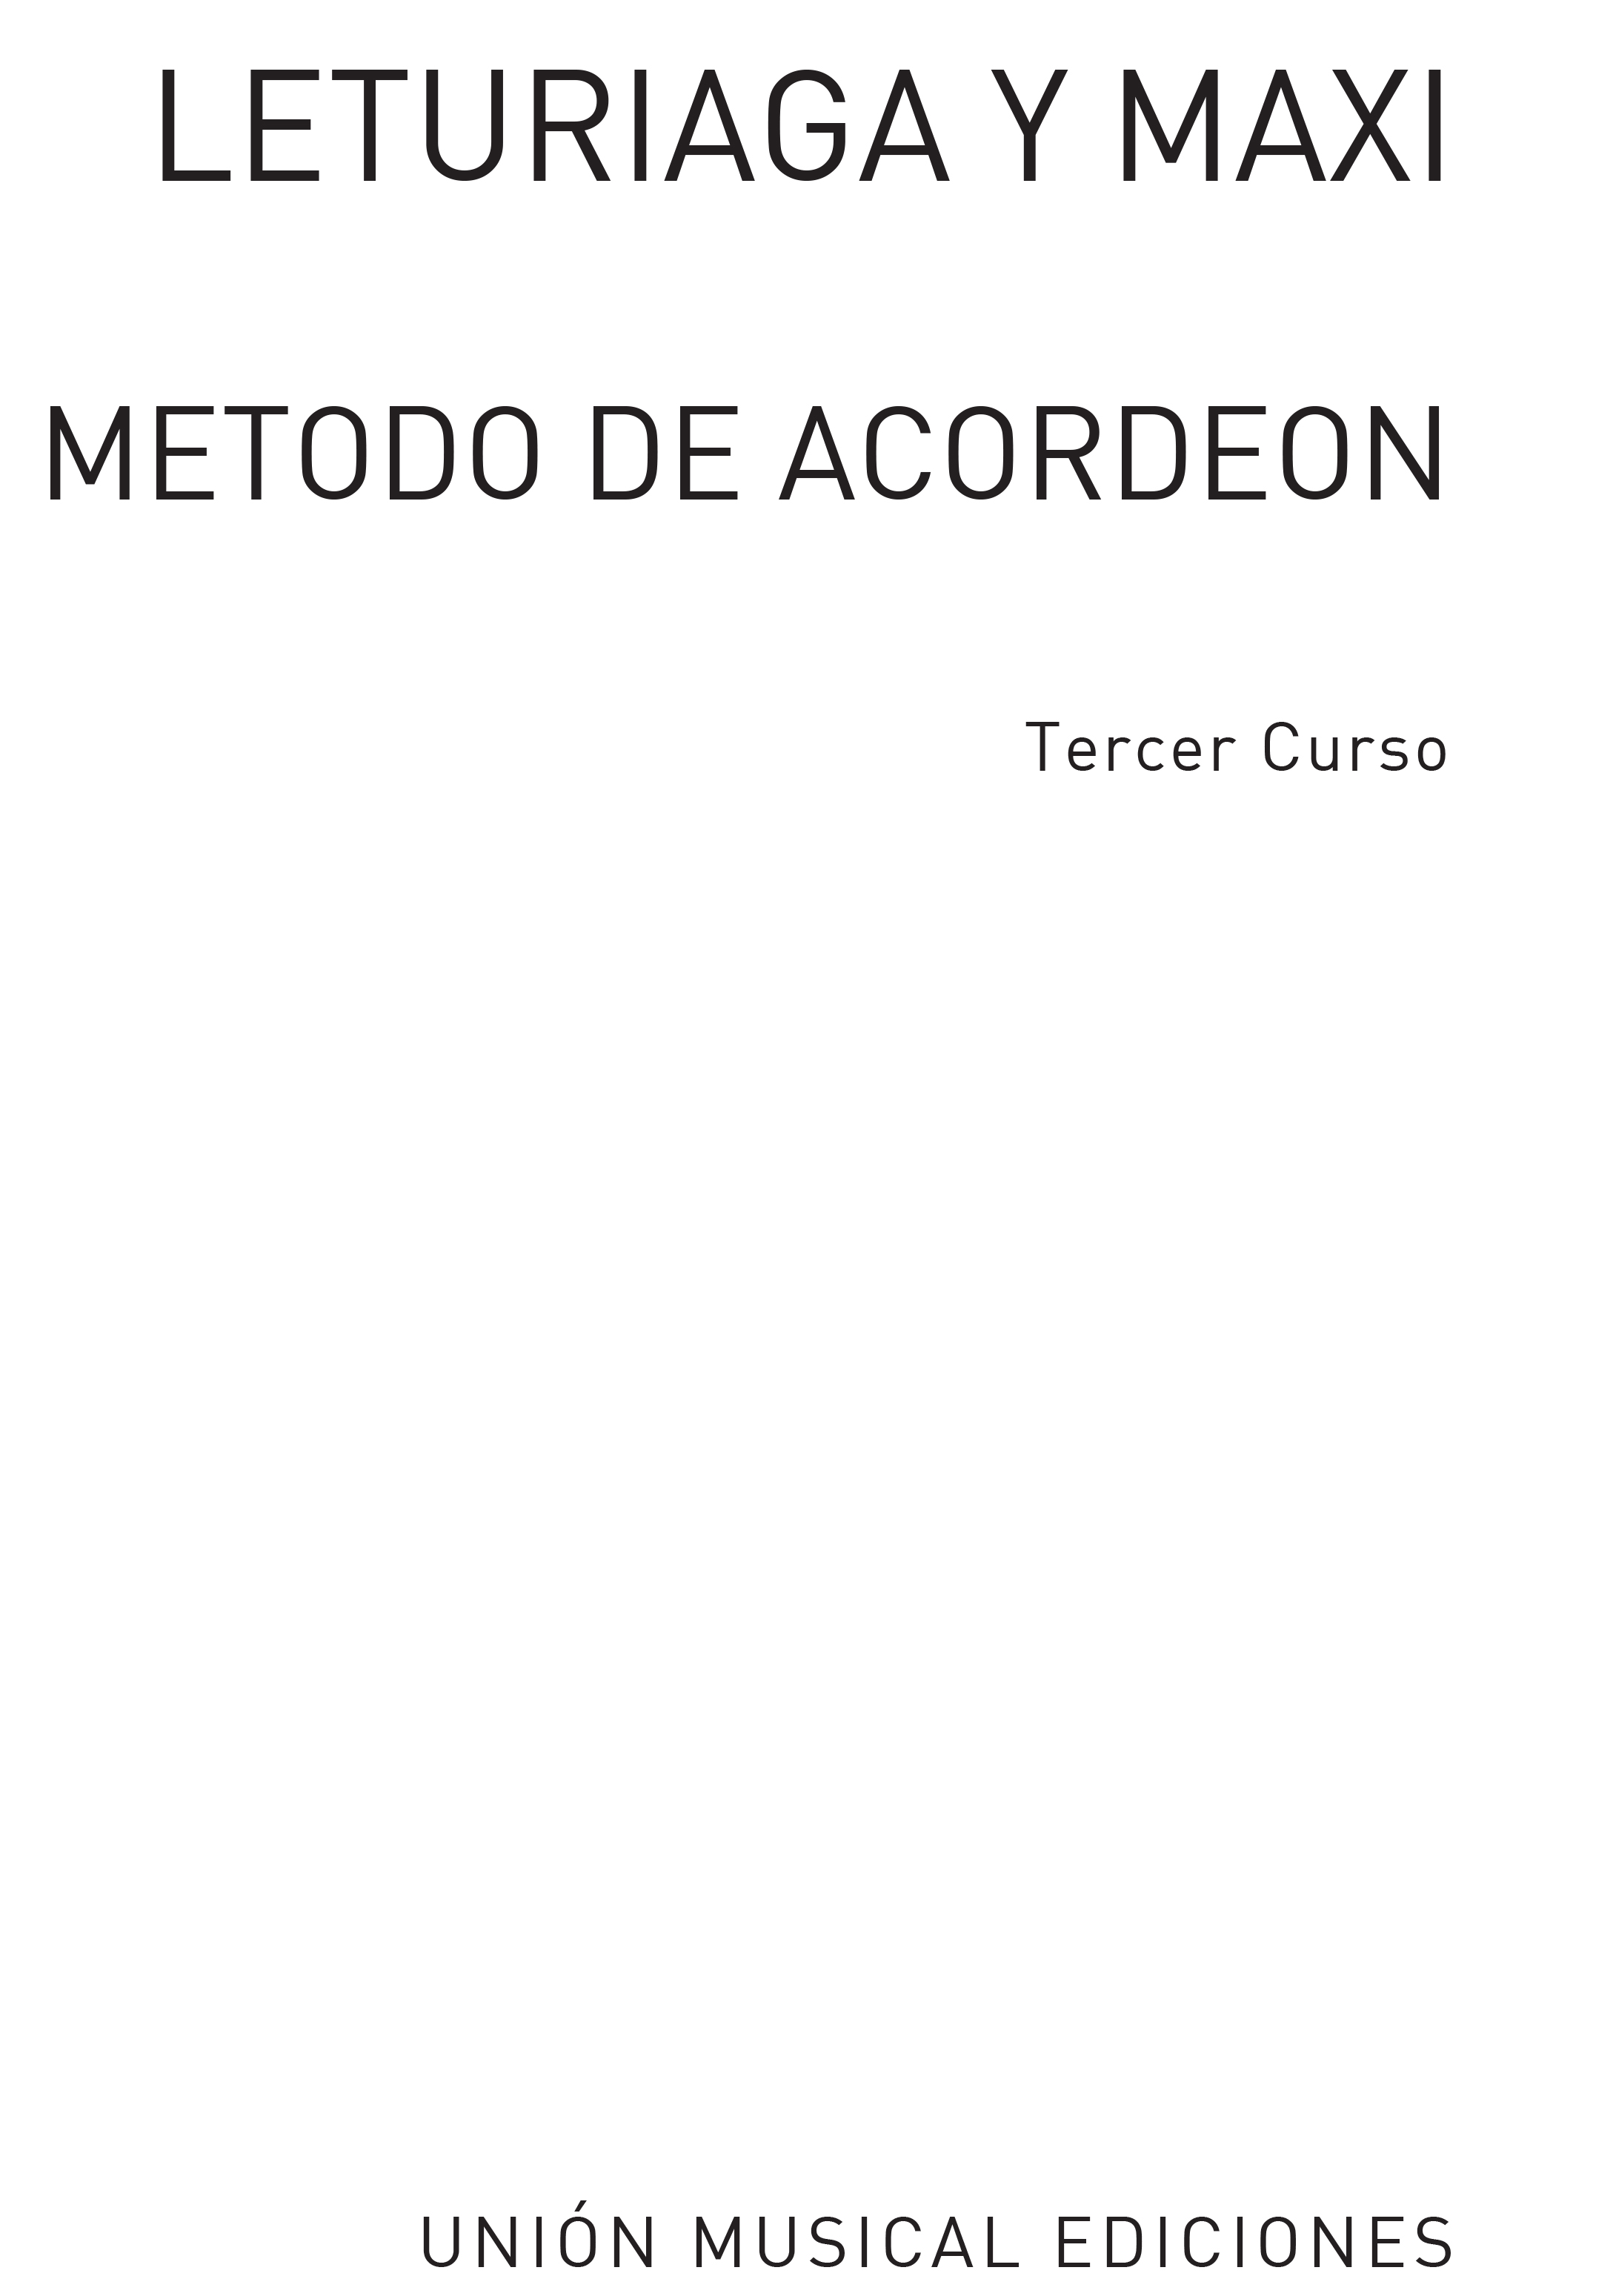 Leturiaga Y Maxi: Metodo de Acordeon: Tercer Curso